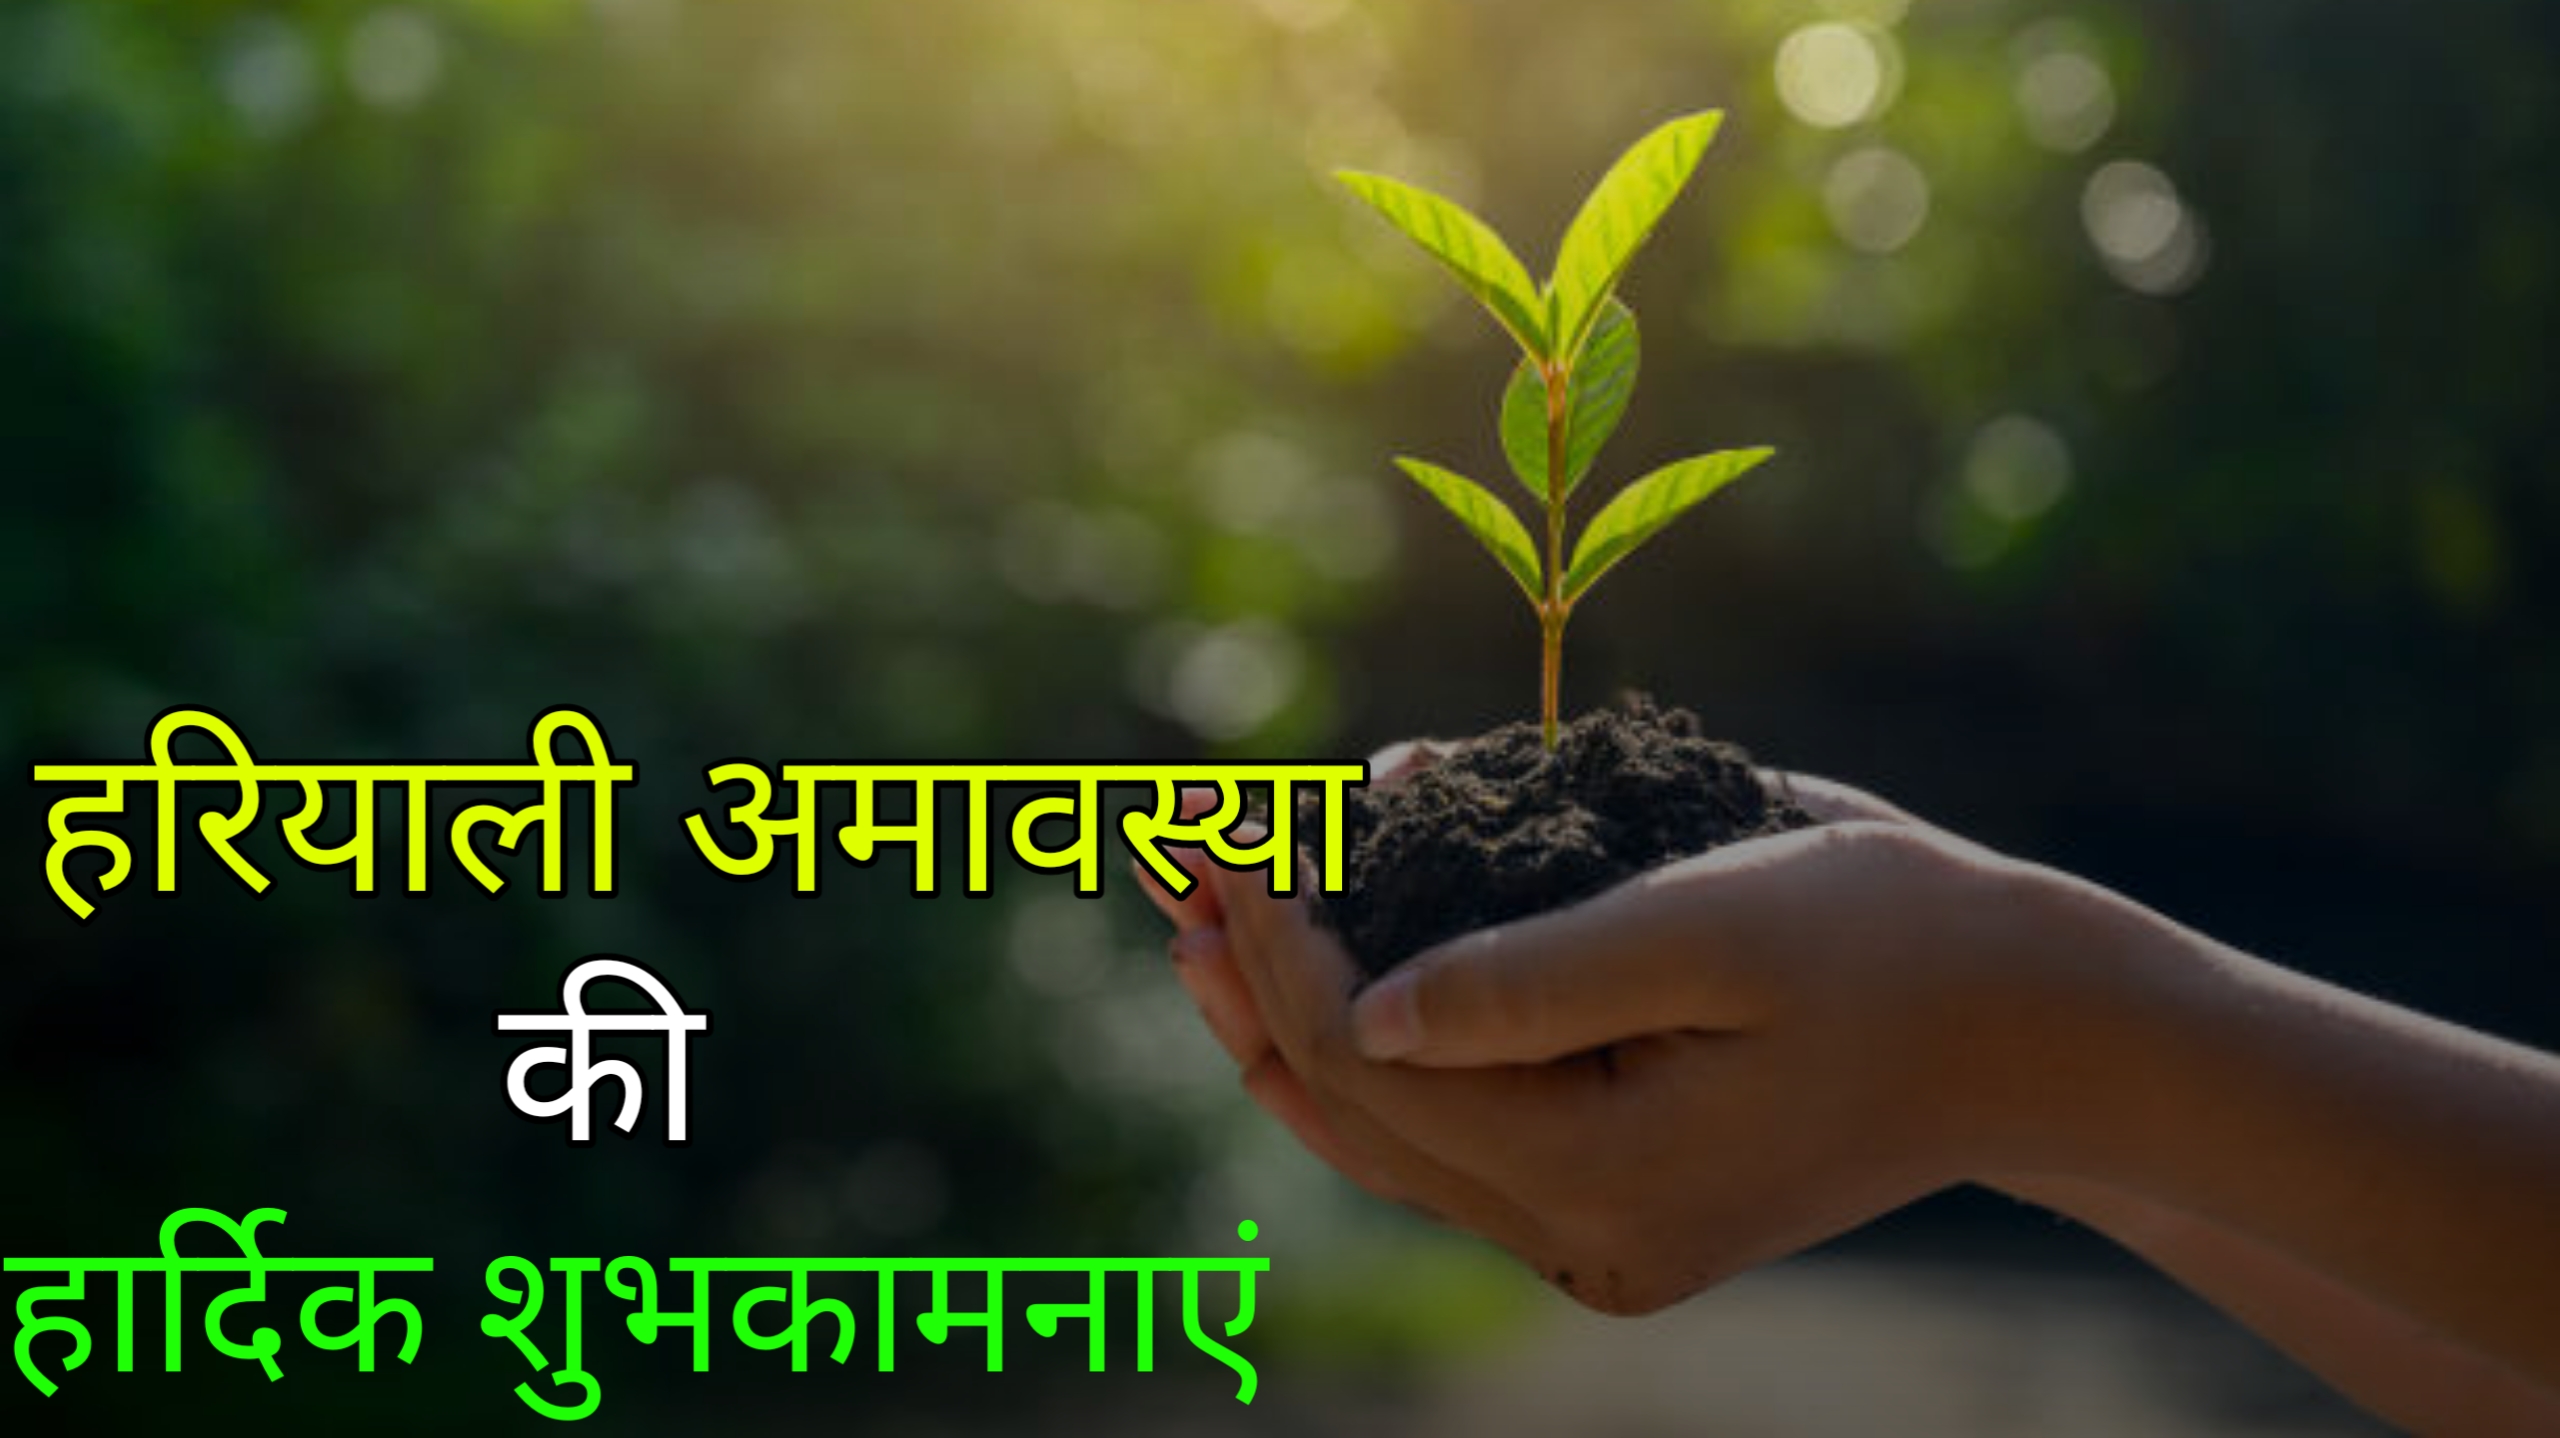 हरियाली अमावस्या पर शायरी 2023 | hariyali amavasya shayari status quotes wishes in Hindi 2023,आप सभी को हरियाली अमावस्या के पावन पर्व की हार्दिक शुभकामनाएं 2023,हरियाली अमावस्या शायरी 2023, Hariyali amavasya whatsapp status 2023 ,Hariyali amavasya facebook status 2023